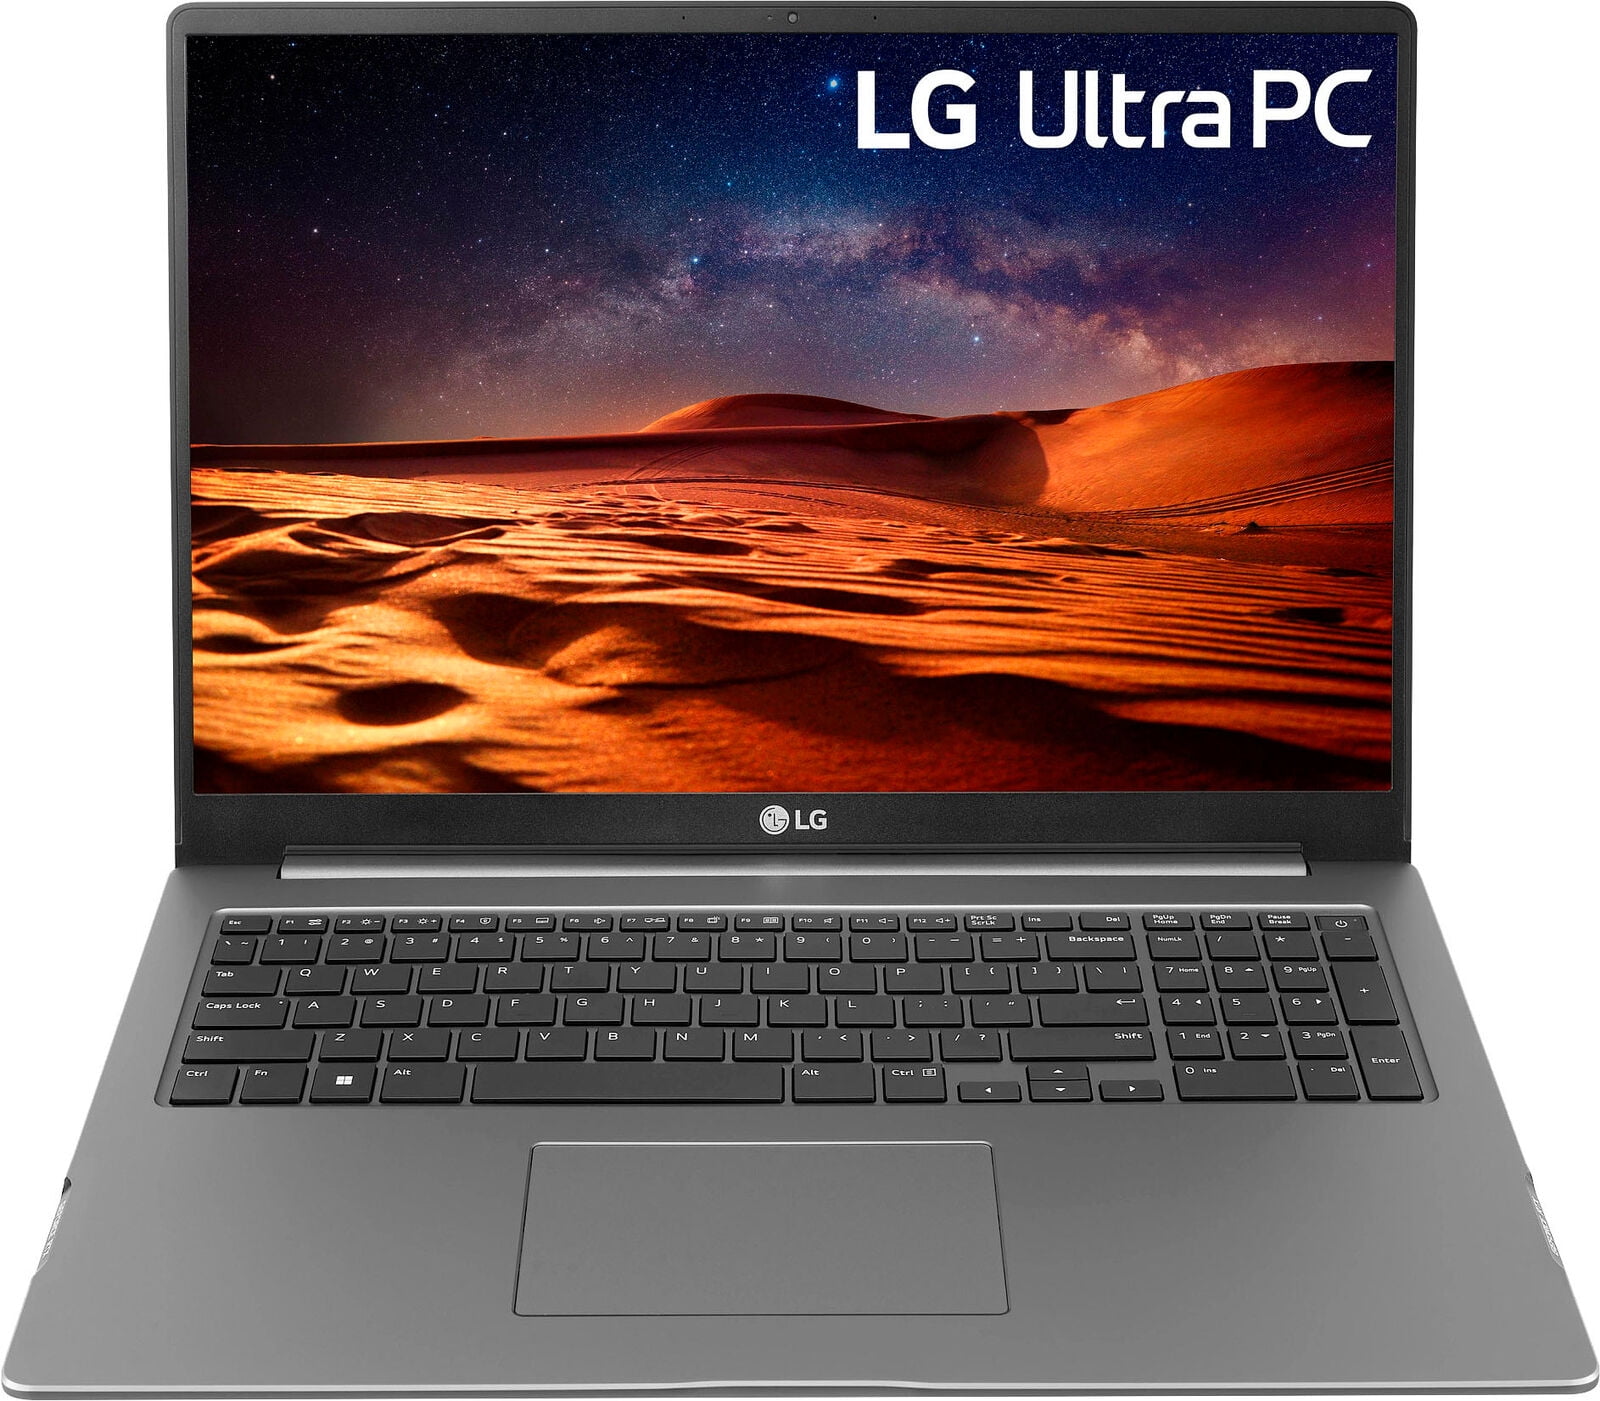 LG - UltraPC 17” Laptop - Intel Core i7 - 16GB Memory - NVIDIA